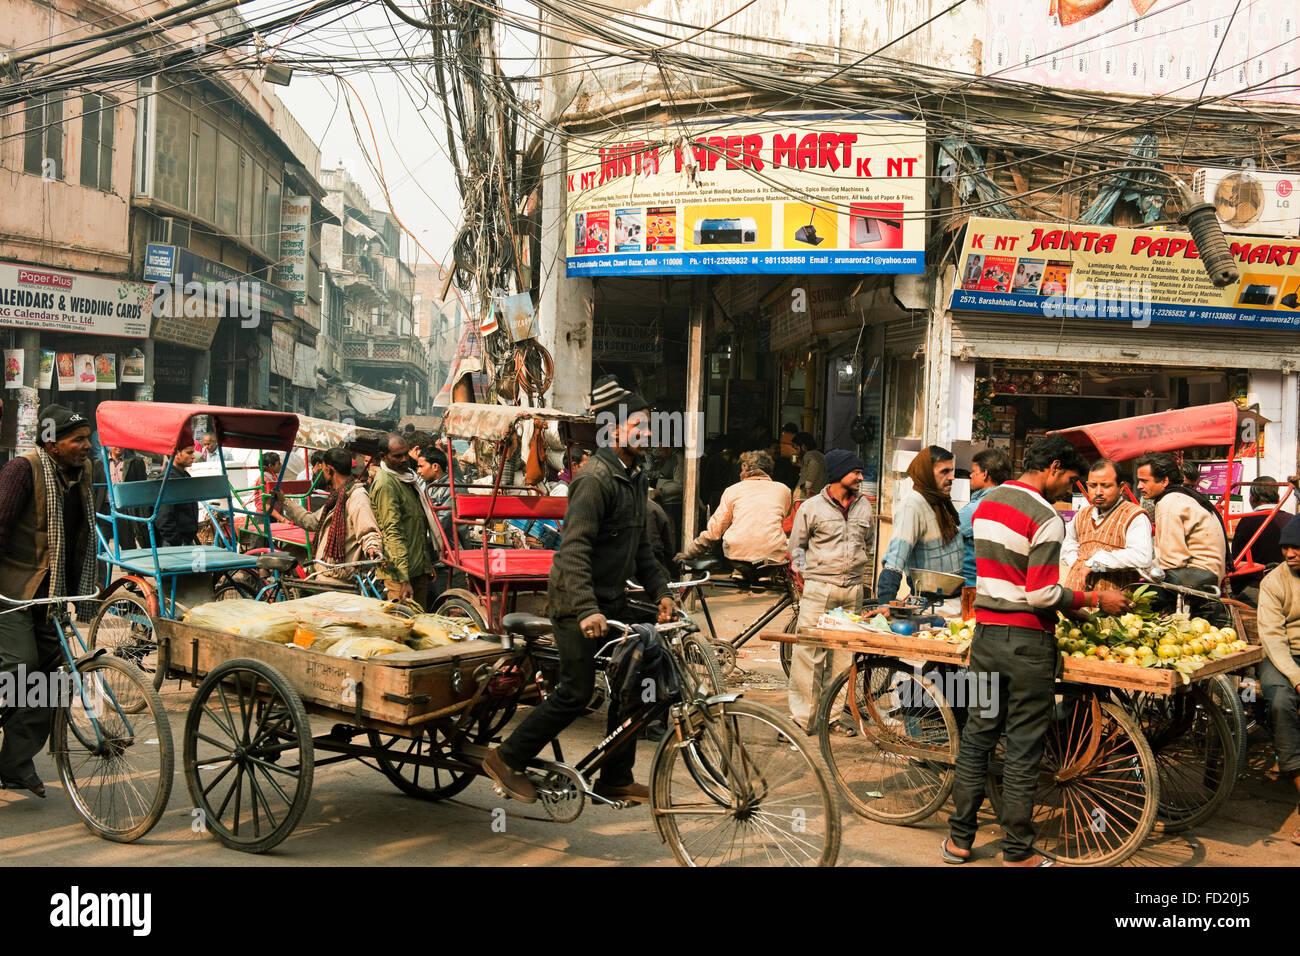 Una scena di strada in Chandni Chowk mercato, Vecchia Delhi, in India con il rickshaw e driver e venditori ambulanti su una strada affollata Foto Stock